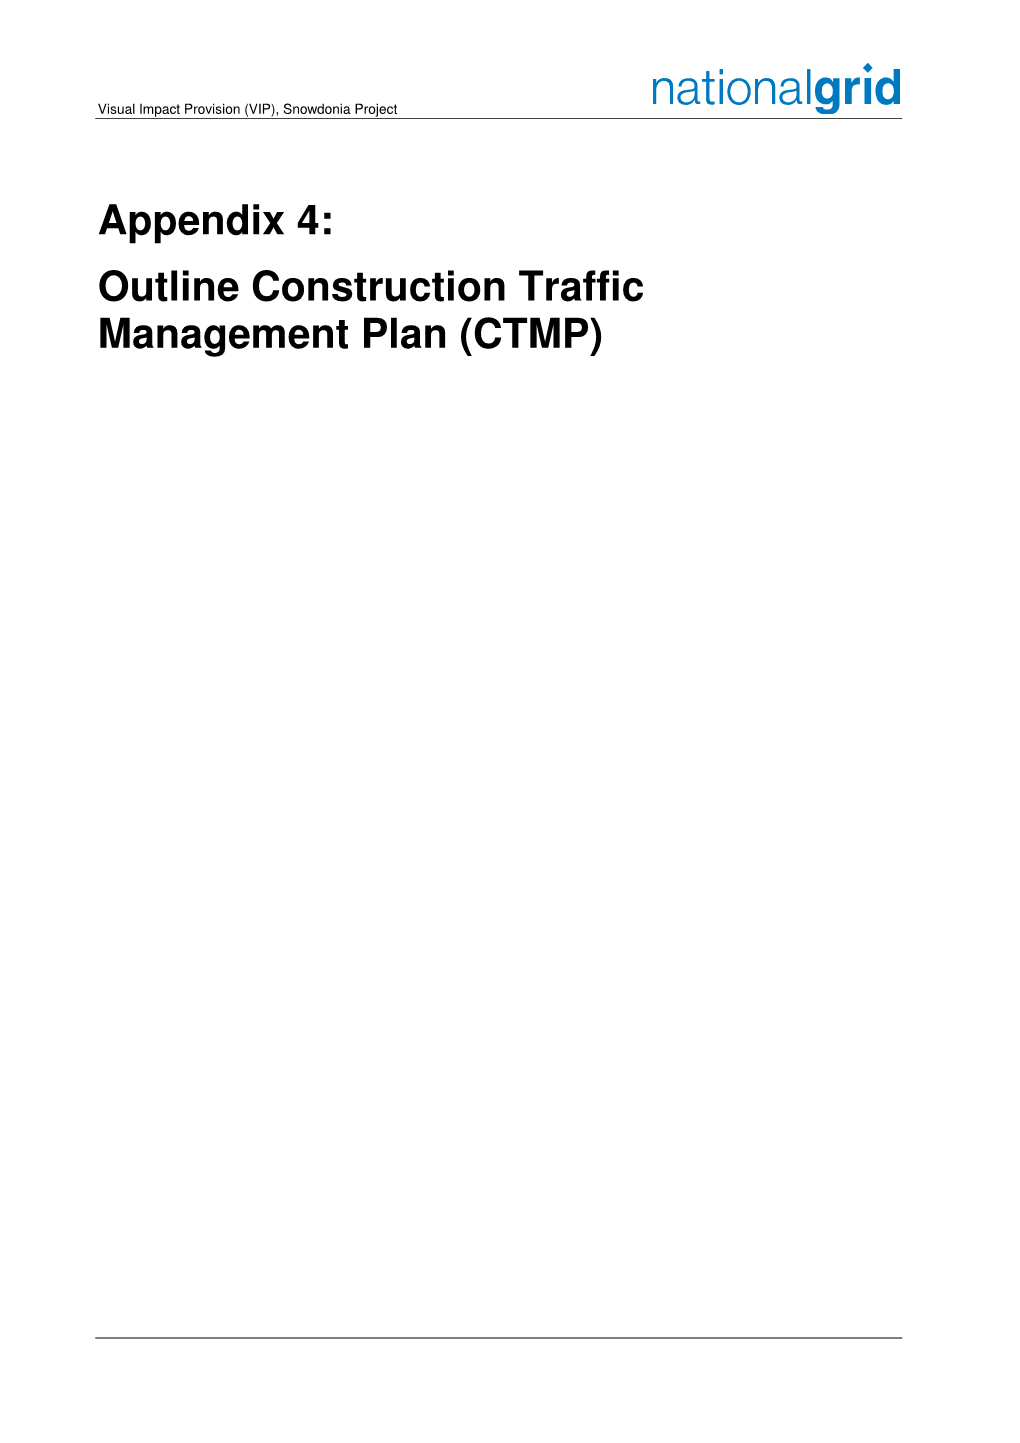 Appendix 4: Outline Construction Traffic Management Plan (CTMP)